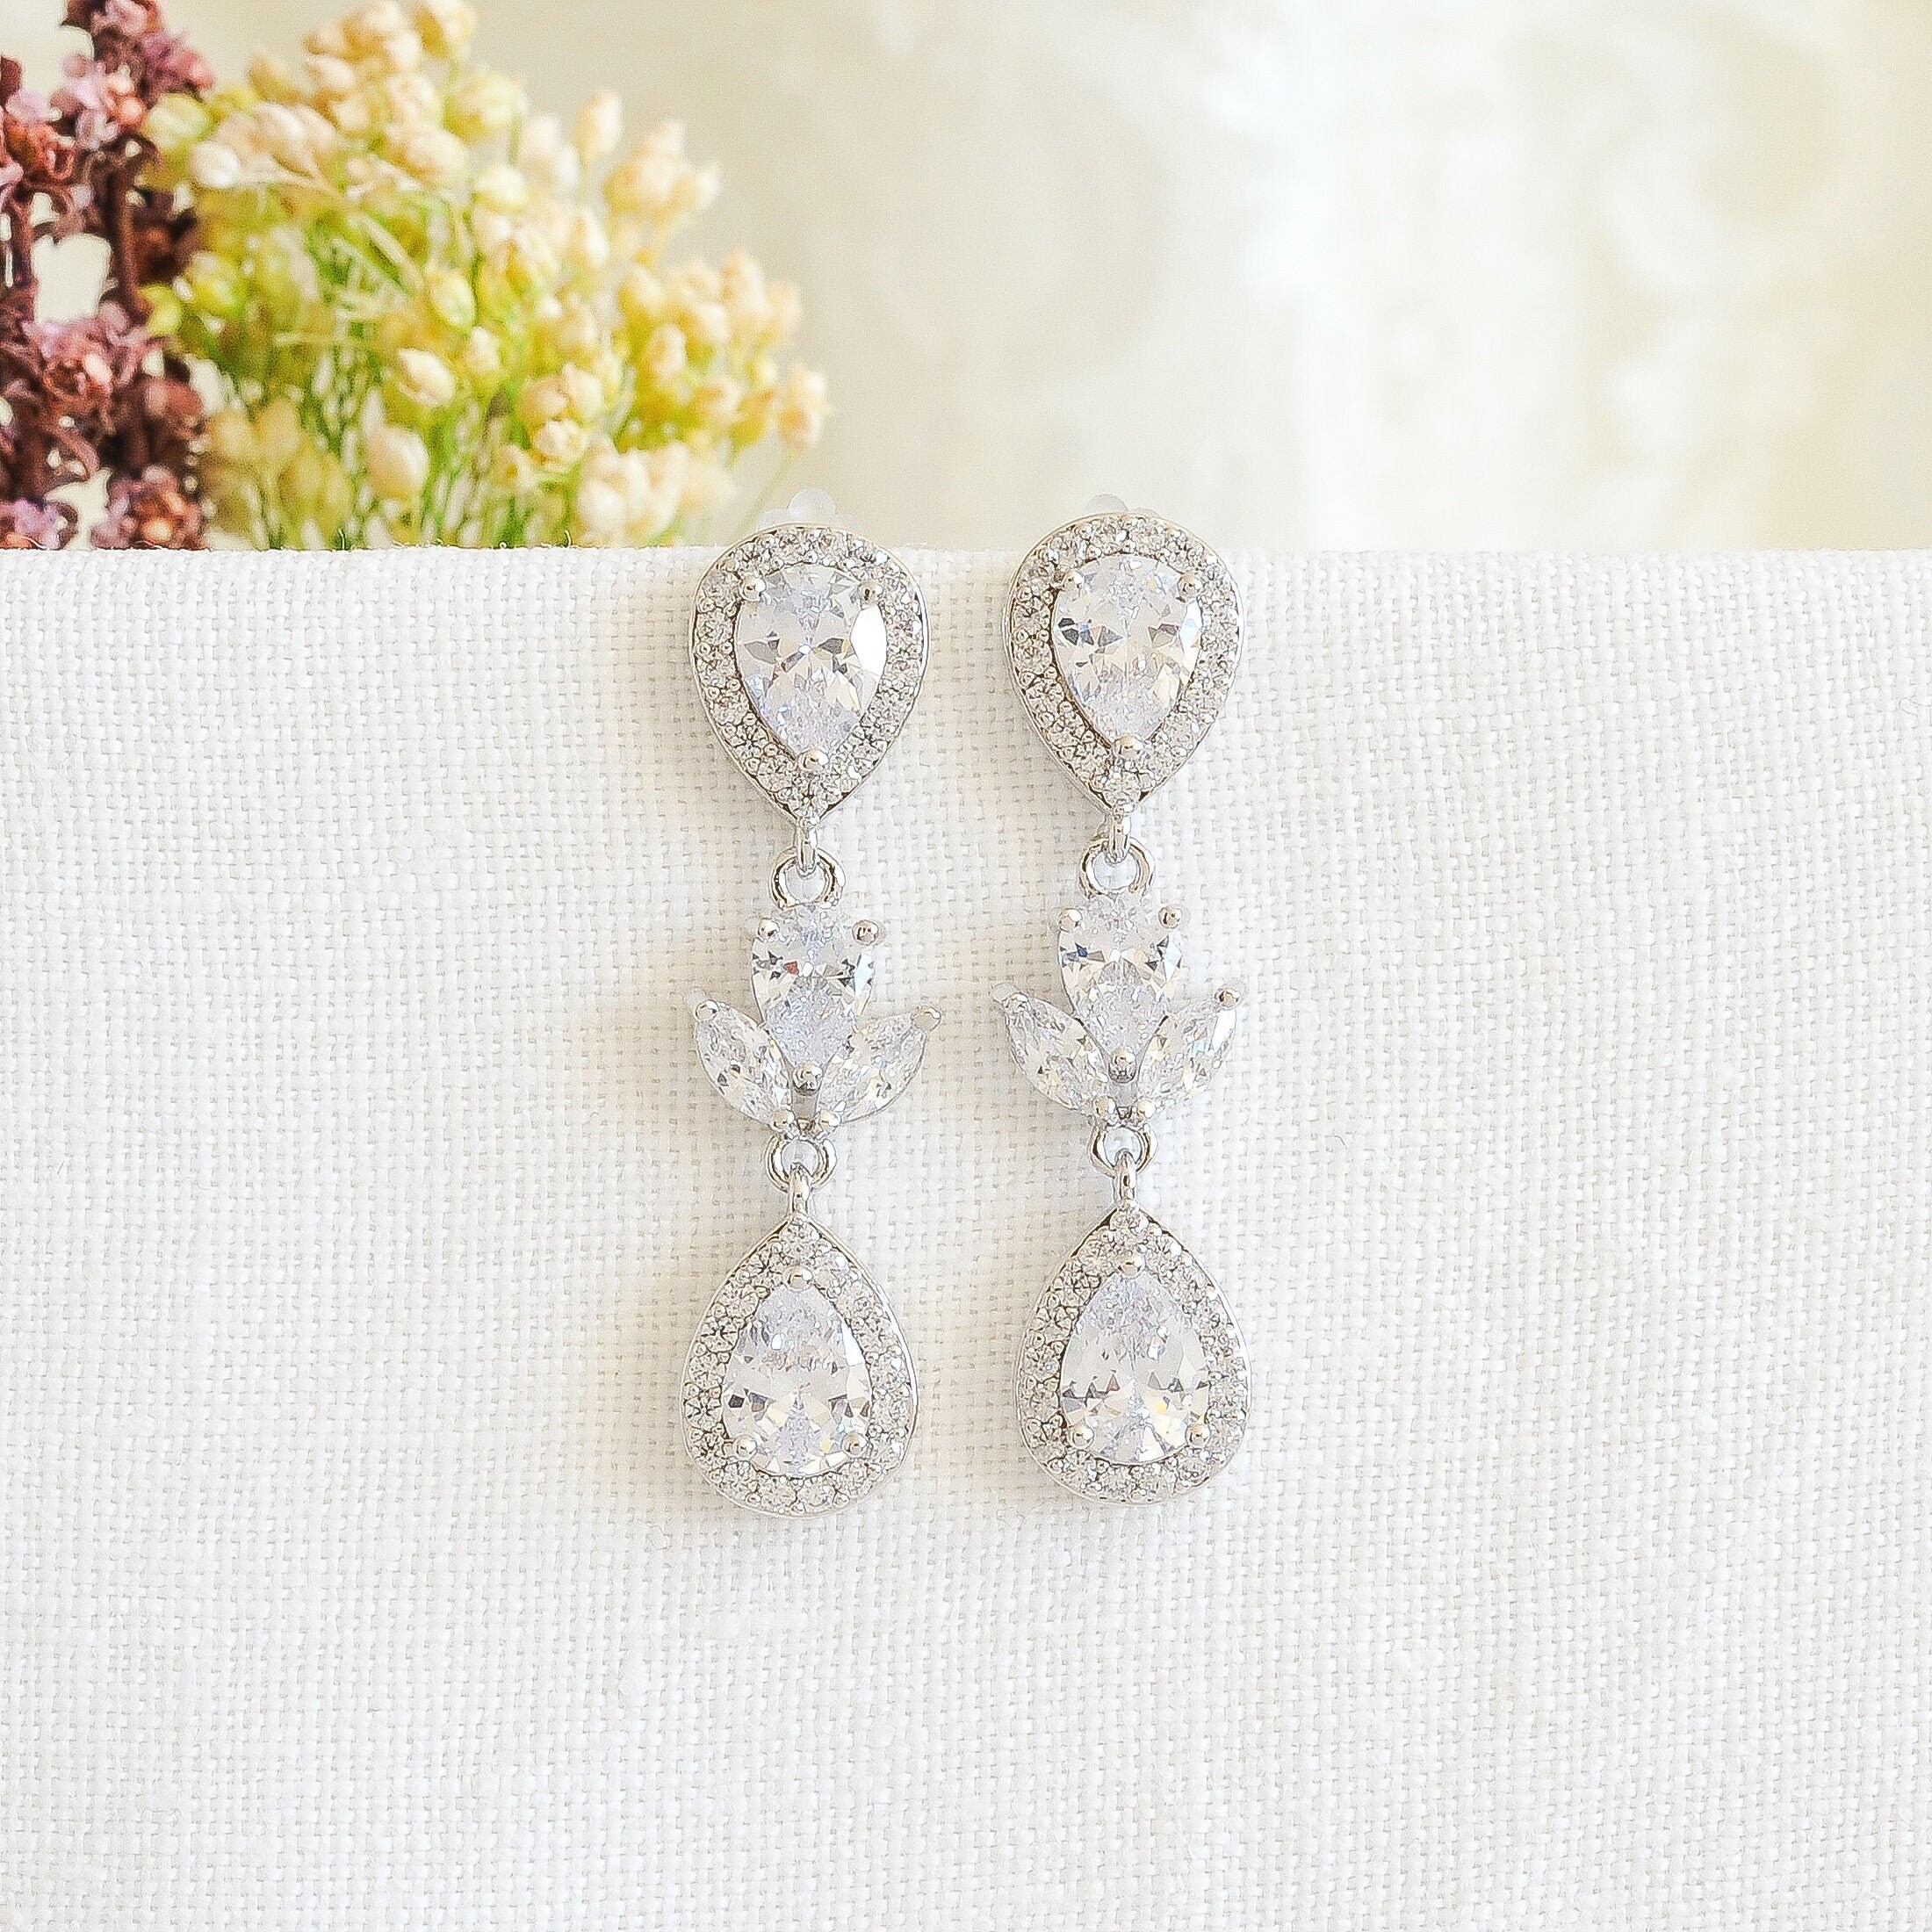 Pearl Drop Earrings Bridal Earrings Wedding Earrings Dangle Bridal Earrings  Pearl Bridal Earrings Crystal Bridal Earrings Jewelry Set Bride - Etsy